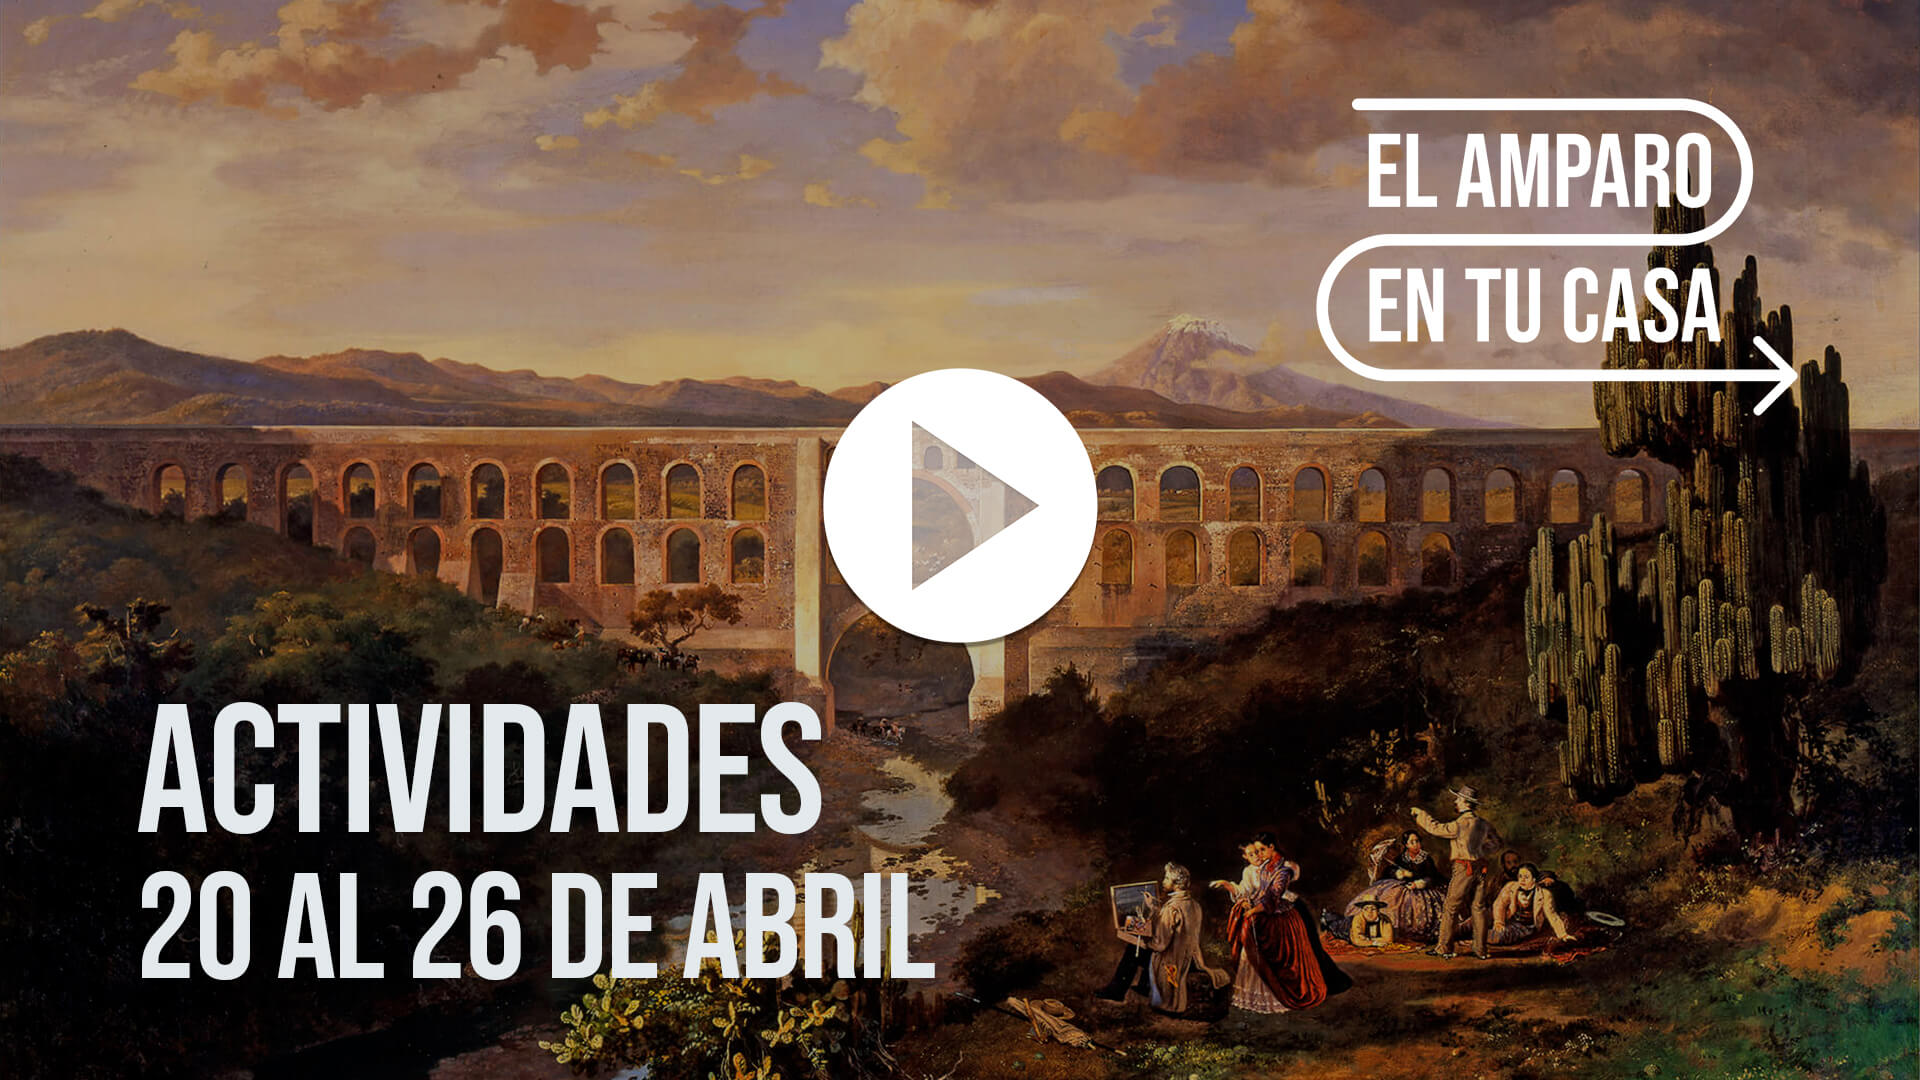 Agenda del 20 al 26 de abril | Museo Amparo, Puebla.